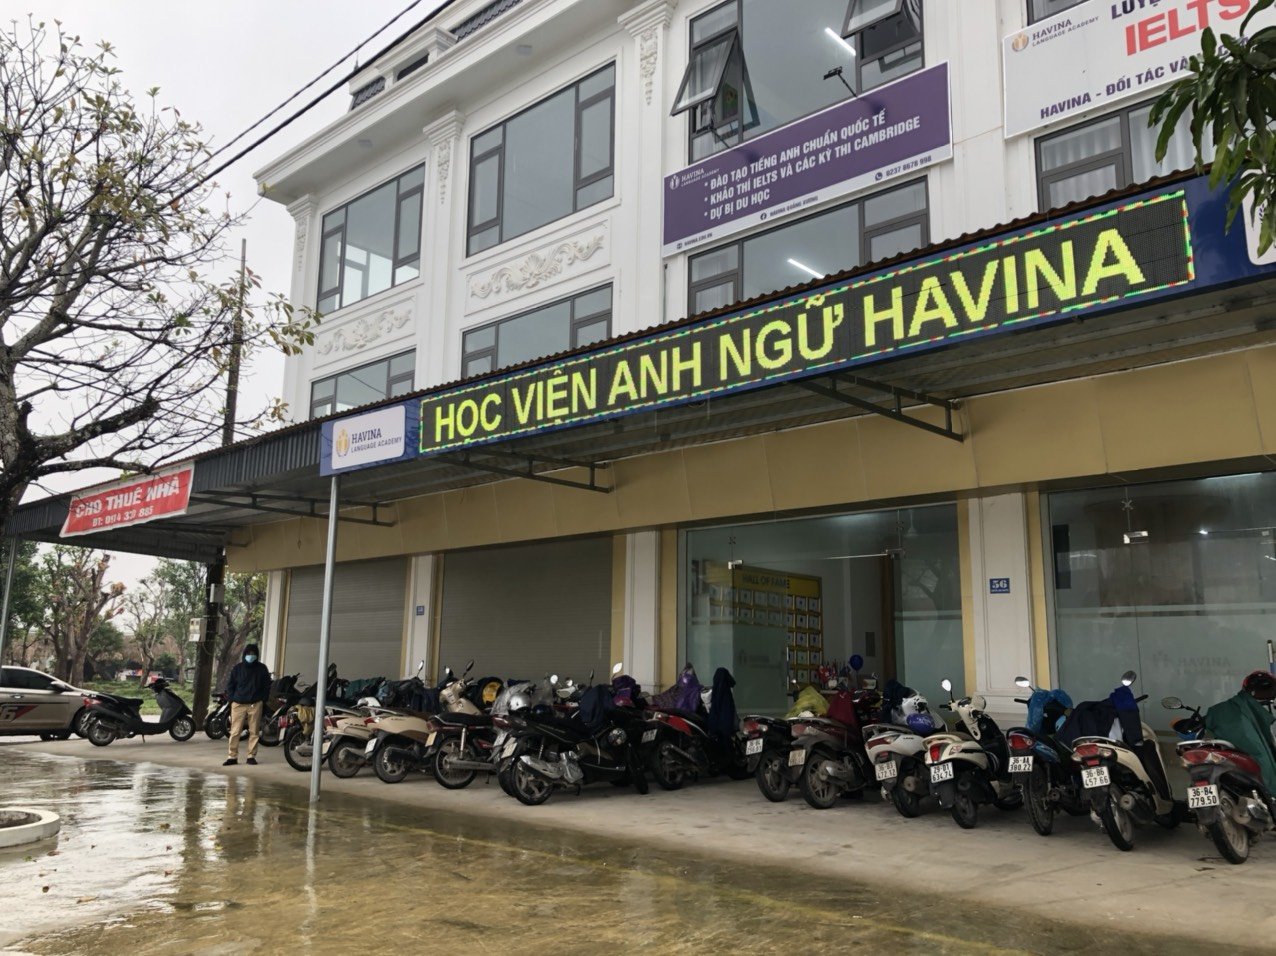 Havina Quảng Xương - 56 Nguyễn Xuân Nguyên, Thị trấn Tân Phong, H. Quảng Xương